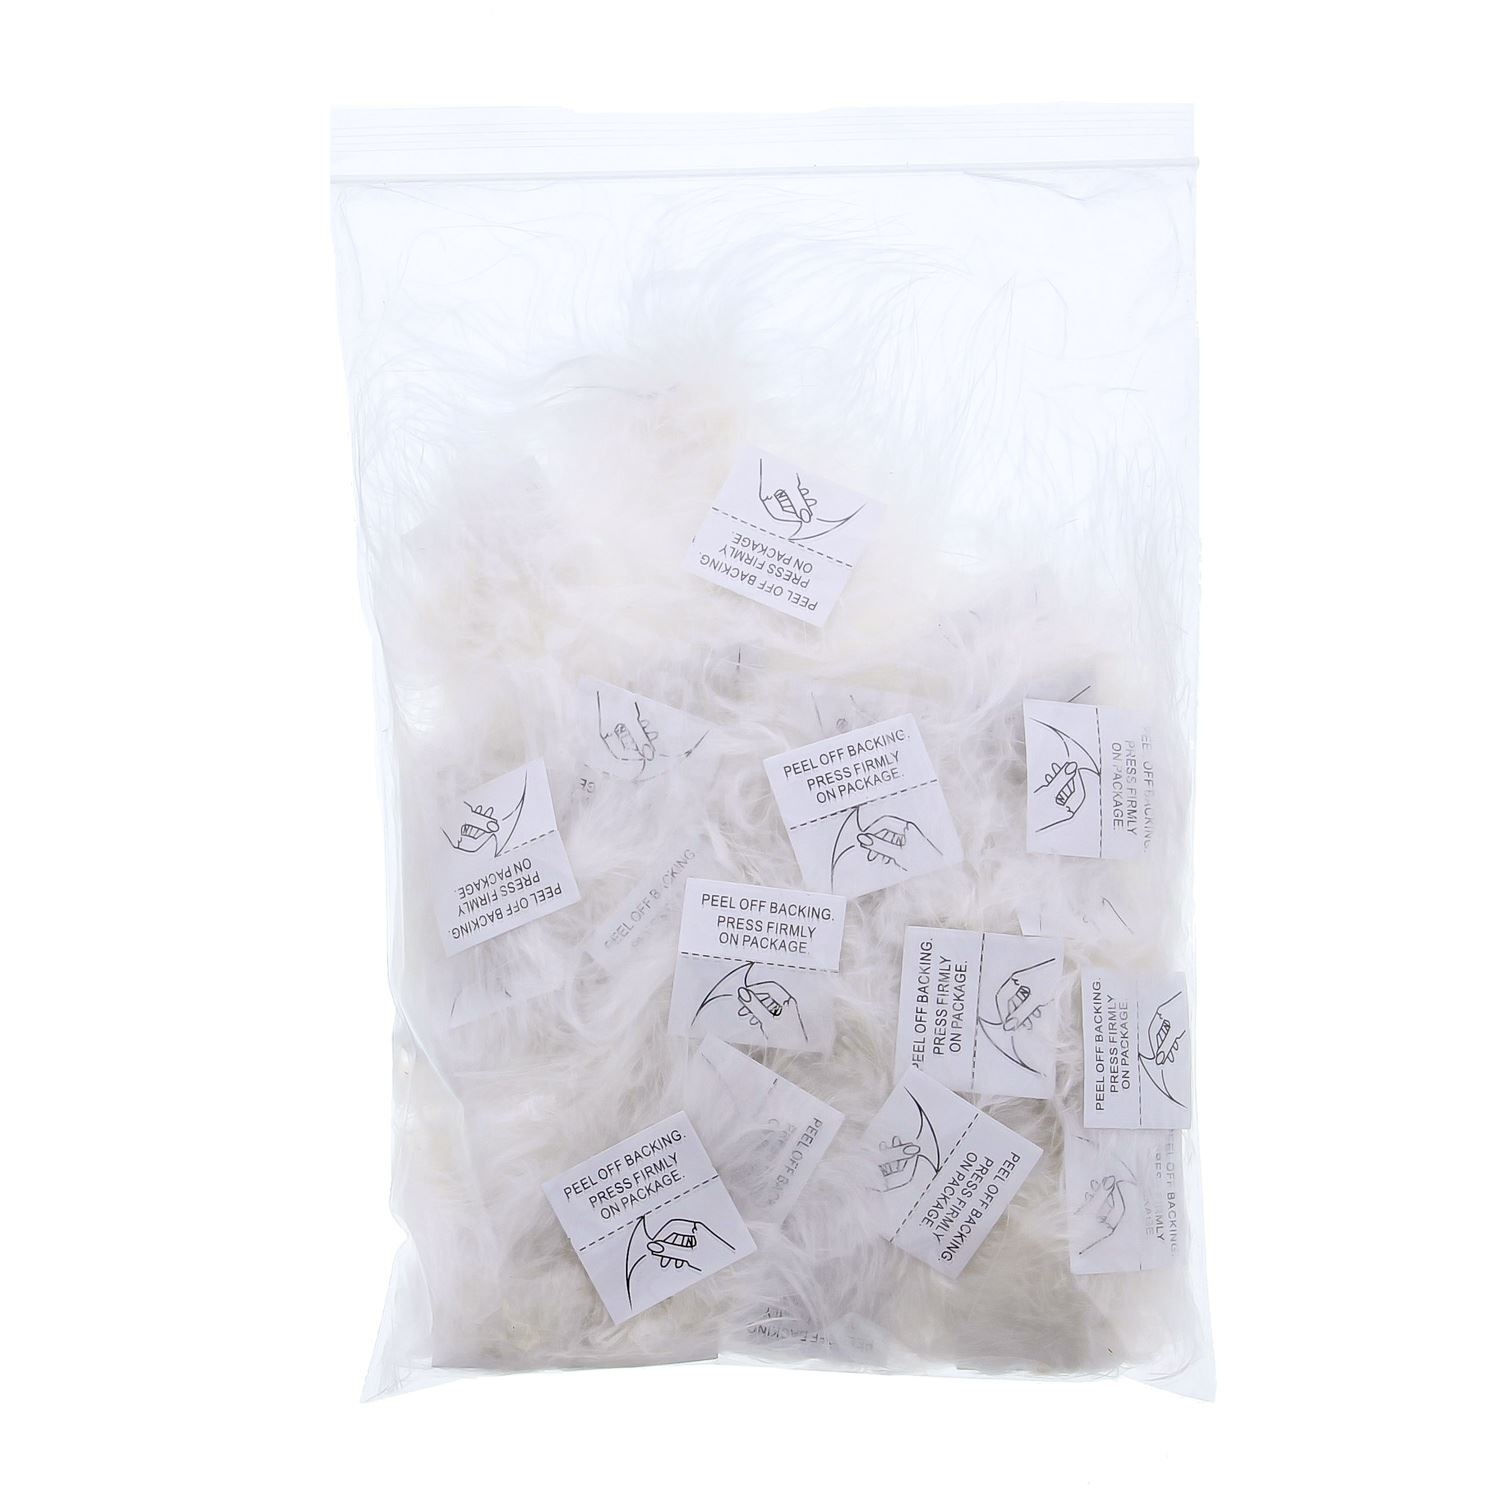 Veertjes Pompon met zelfklevende sticker Wit -  50 stuks per zak